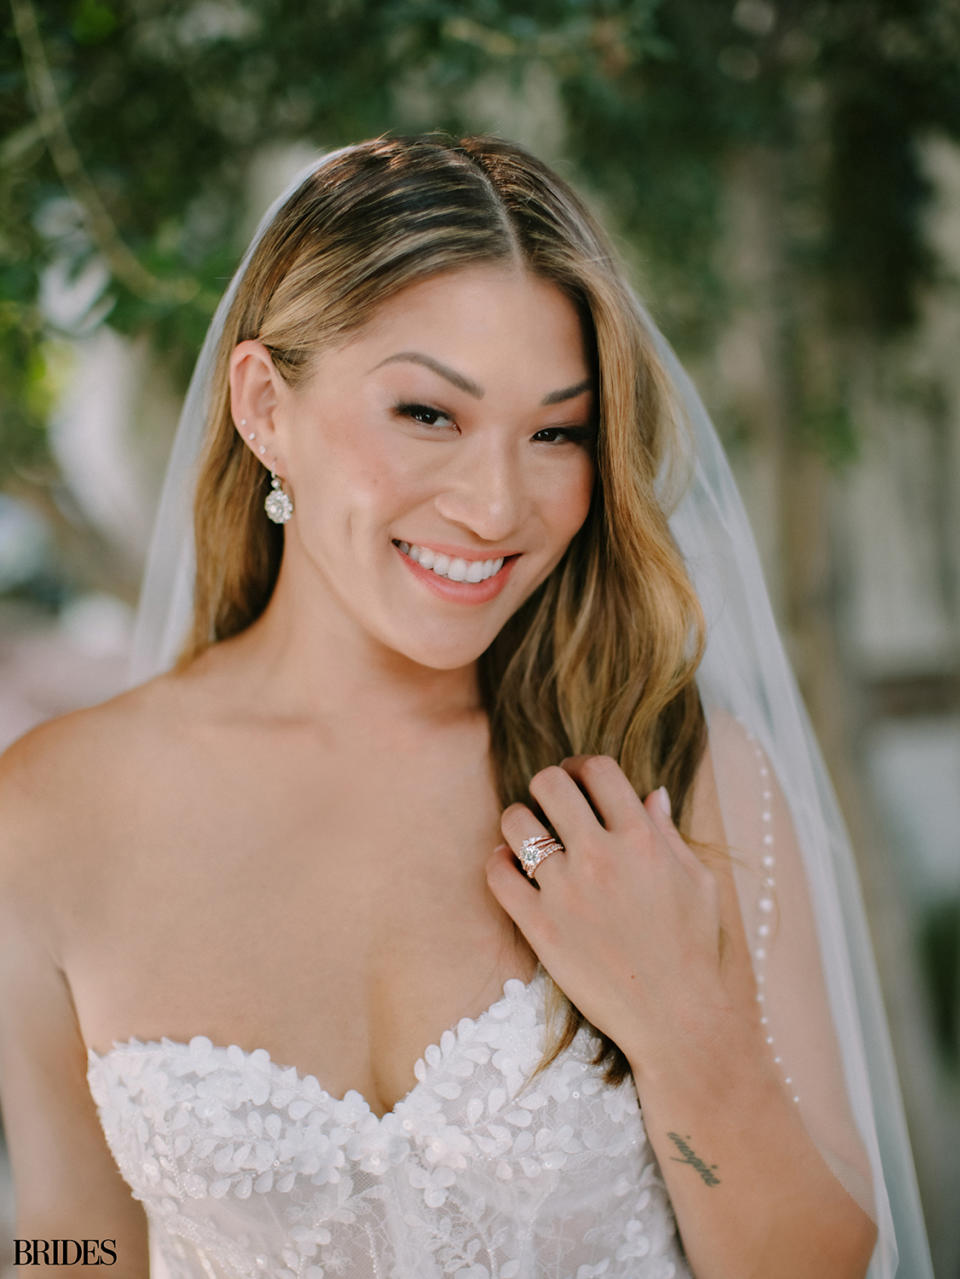 Glee 's Jenna Ushkowitz Shares Stunning Photos from Her Los Angeles Wedding